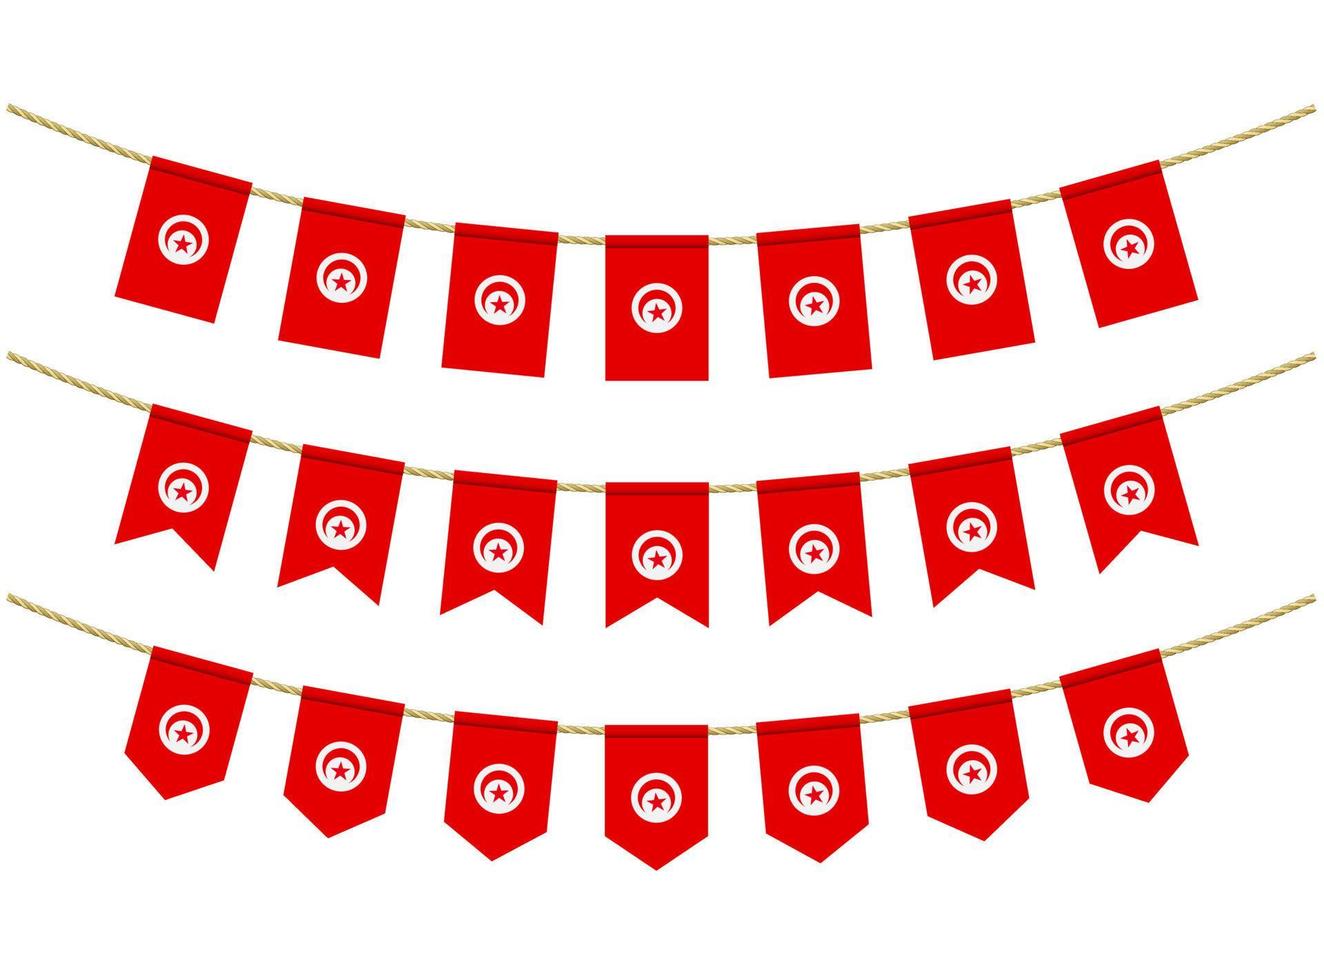 bandera de túnez en las cuerdas sobre fondo blanco. conjunto de banderas patrióticas del empavesado. decoración del empavesado de la bandera de túnez vector